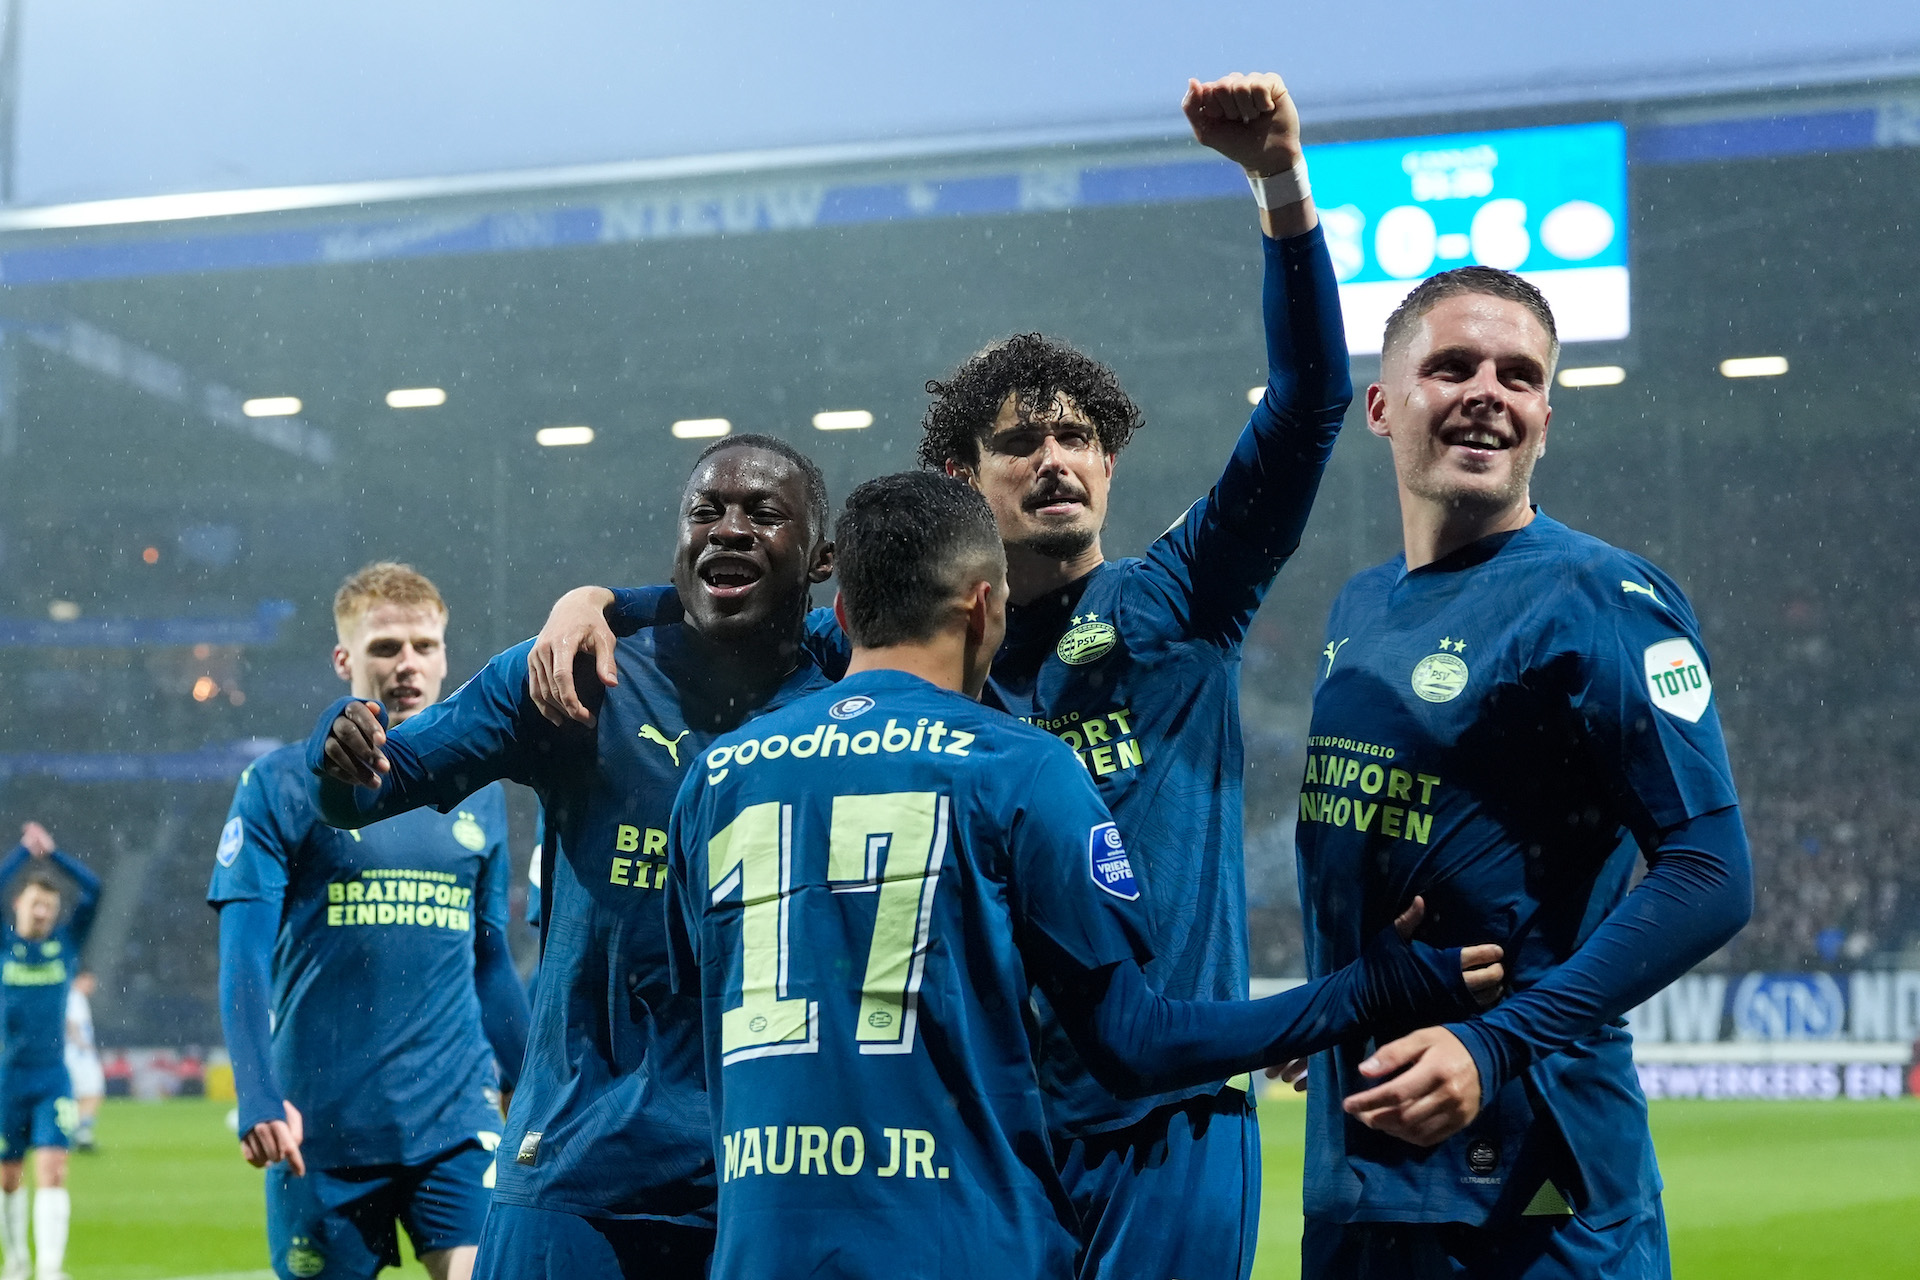 El PSV hizo lo que tenía que hacer y consiguió la mayor victoria a domicilio de su historia. Pronto se decidirá en Deventer lo larga que será la noche. 